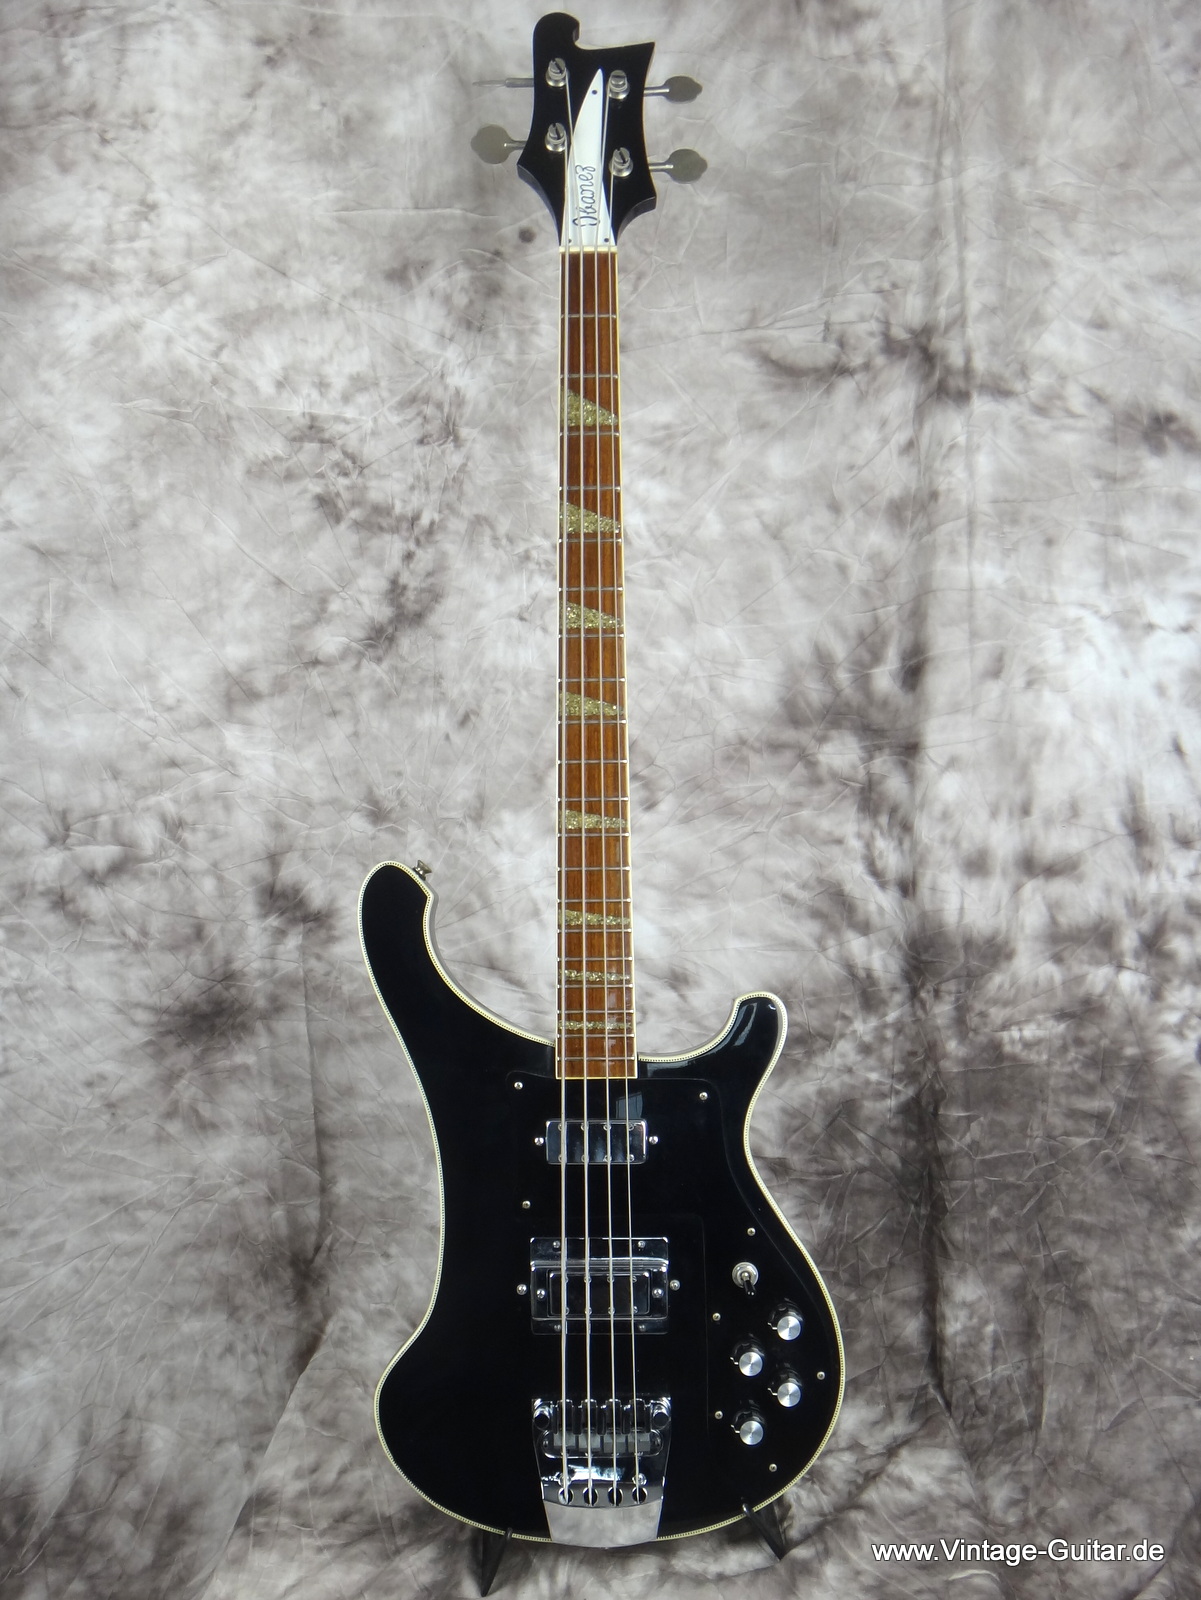 Ibanez Model 2338 Rickenbacker 4001 Copy 1970's Black Bass For Sale Vintage  Guitar Oldenburg